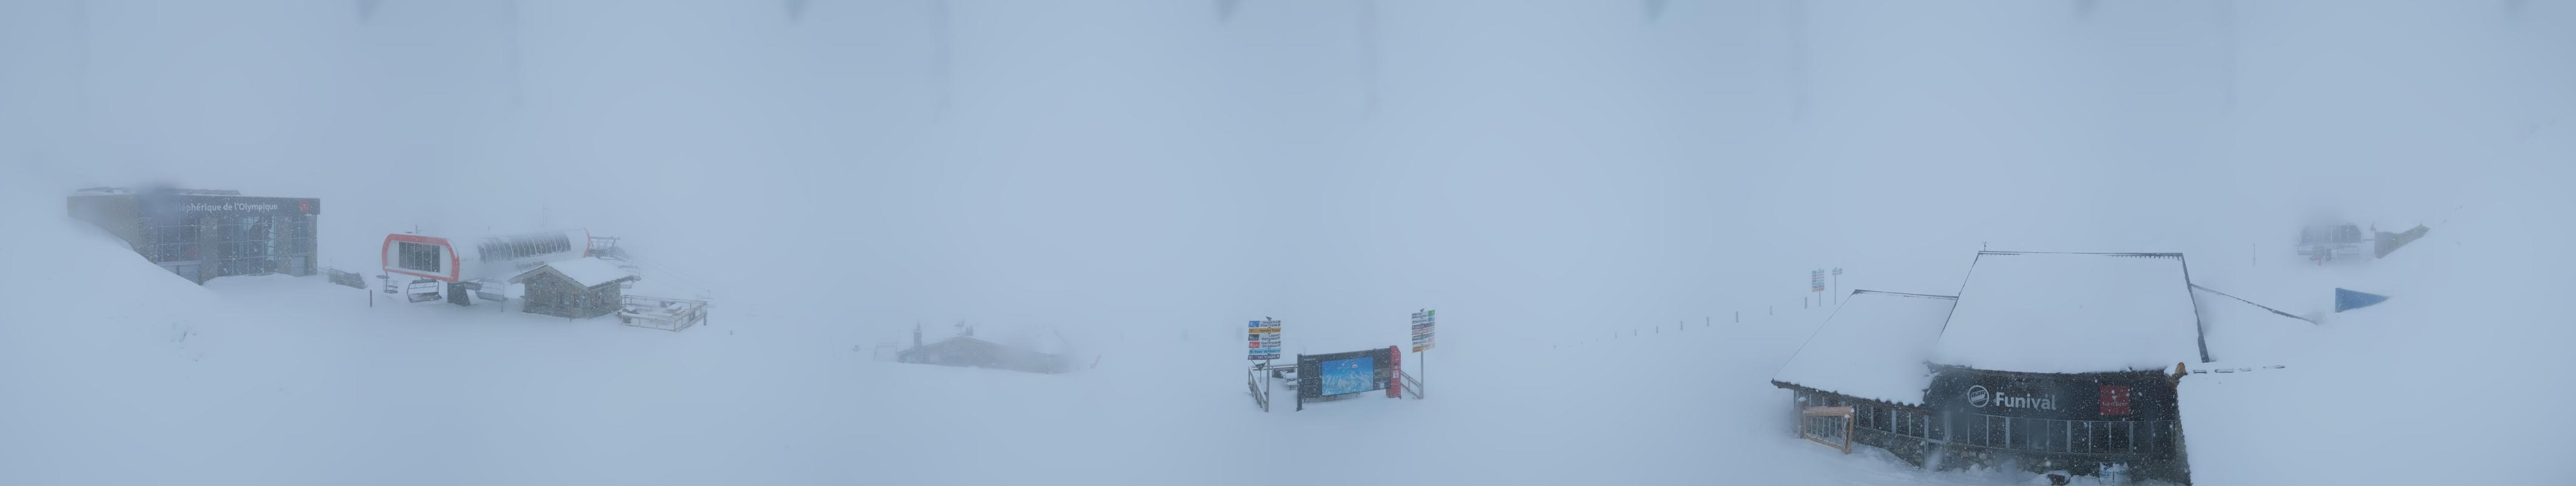 Val d'Isere webcam - Bellevarde ski station